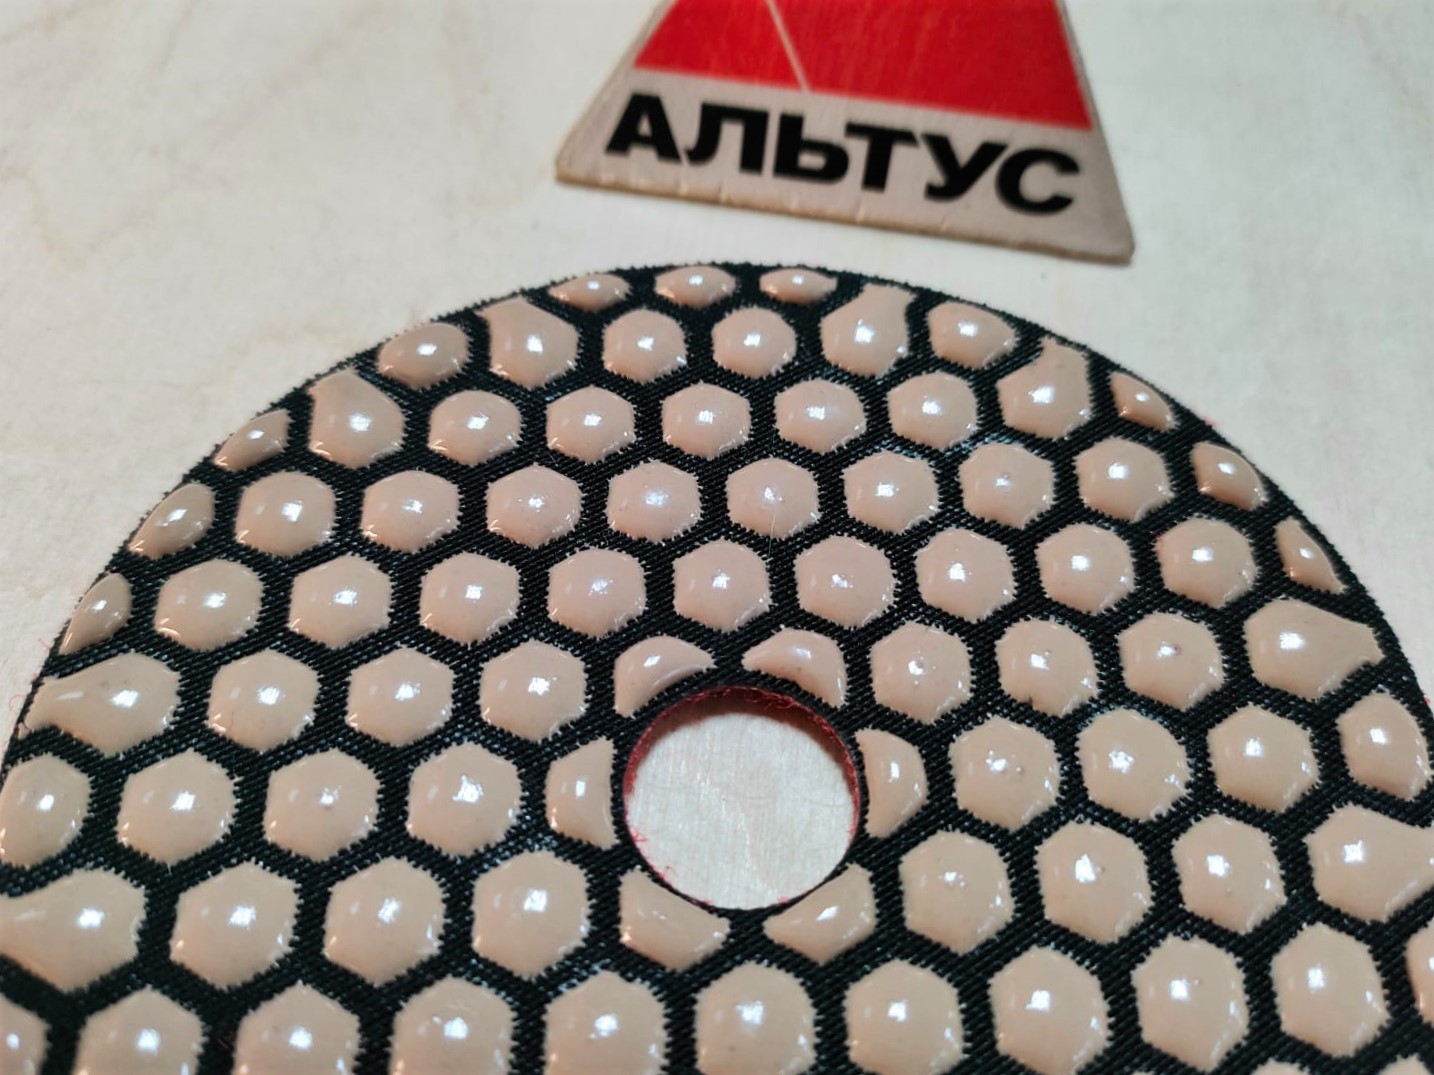 Круг Matrix Алмазный гибкий шлифовальный, сухое шлифование, 100мм, Р400 (5шт/уп)